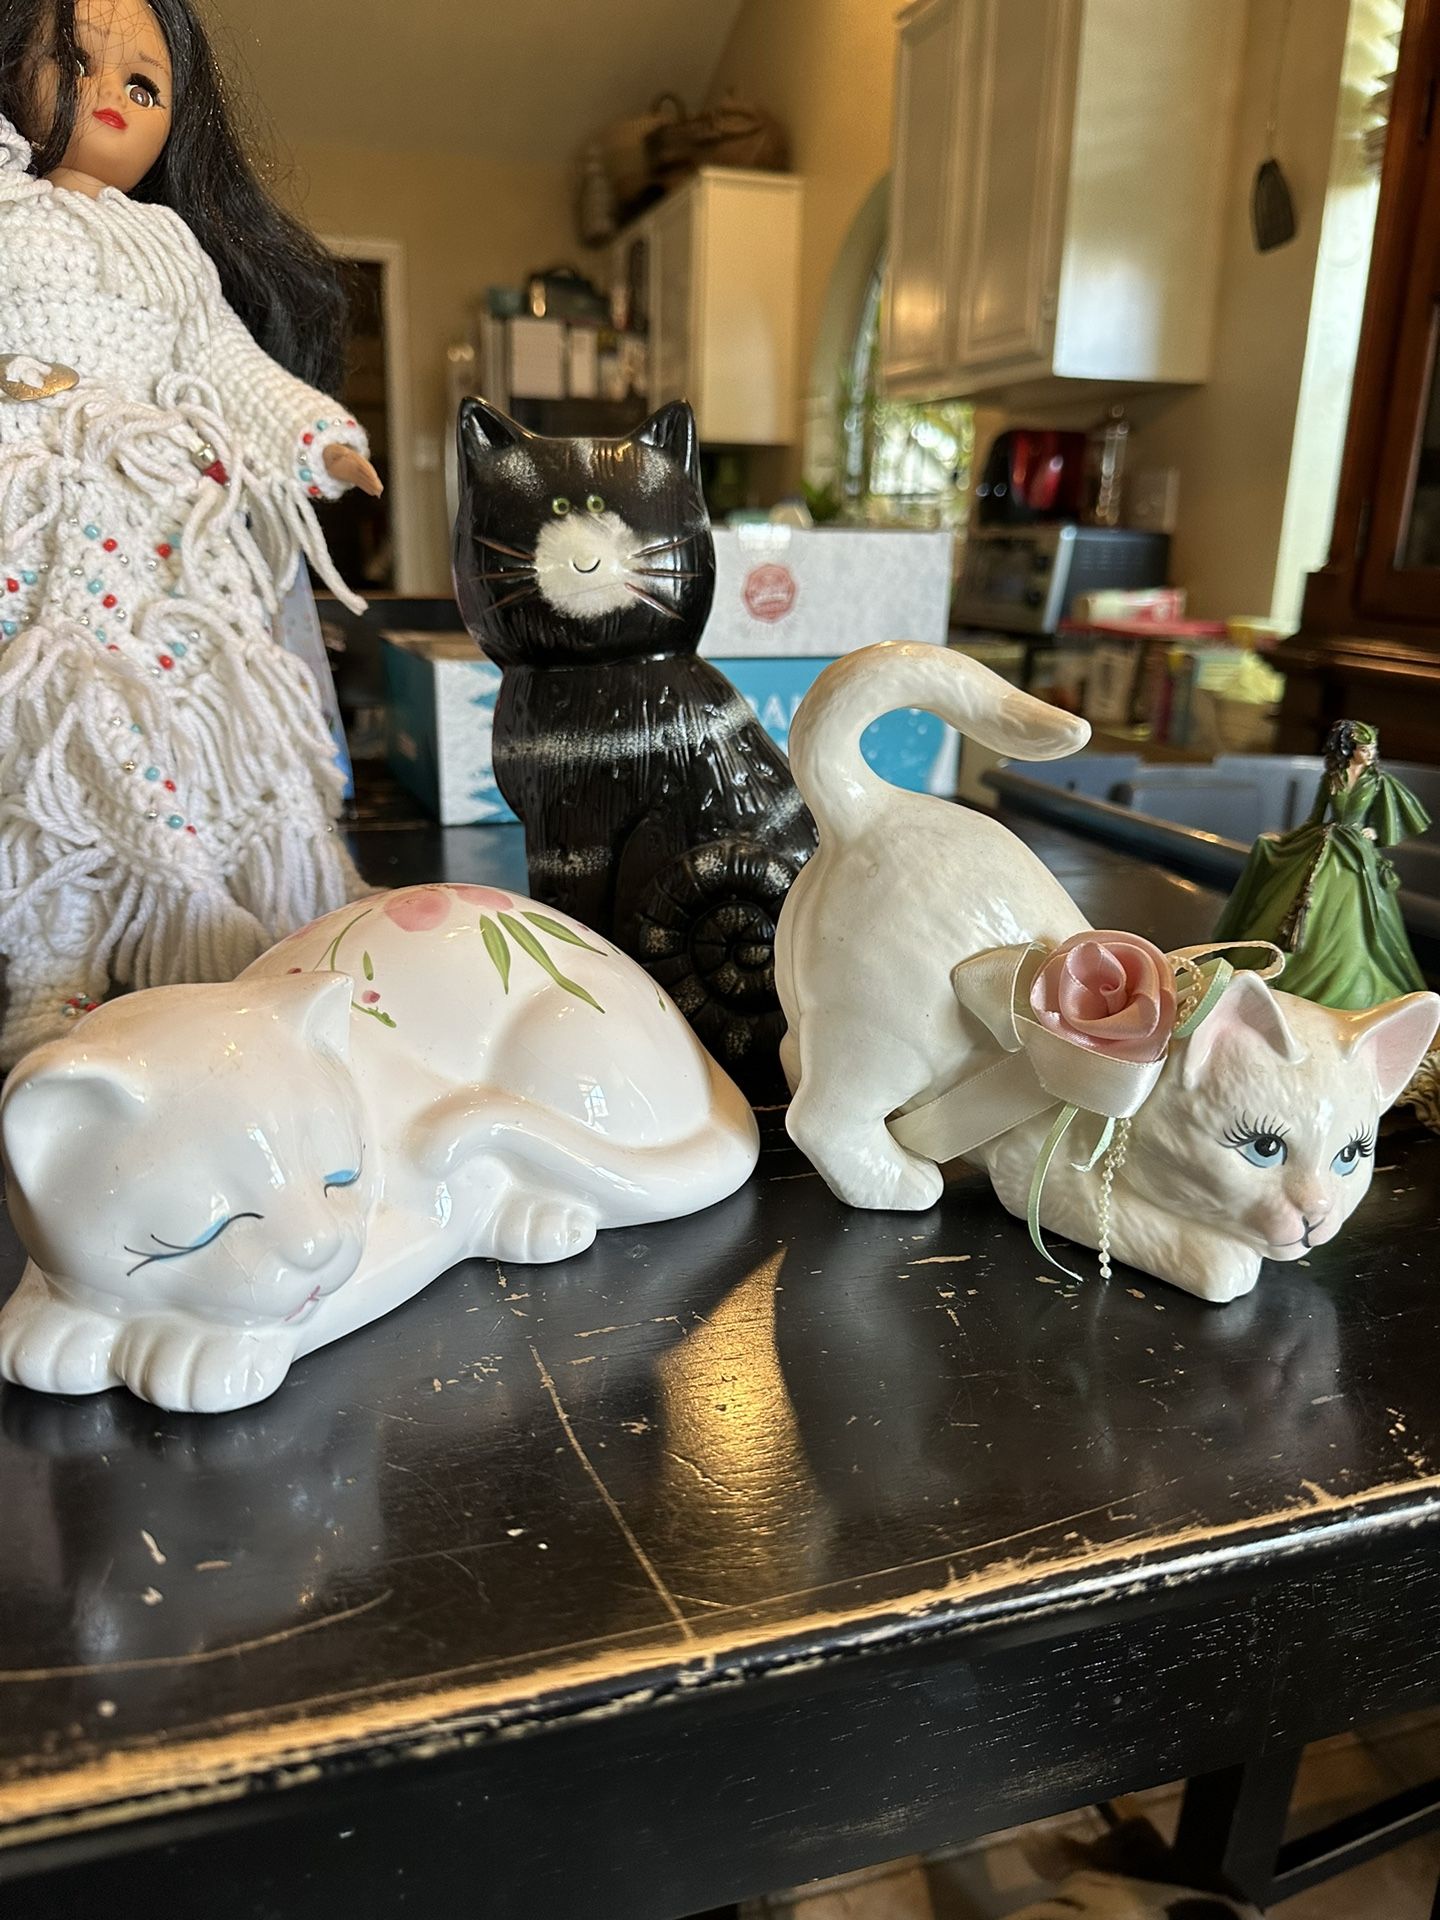 3 Cute Cat Statues.  